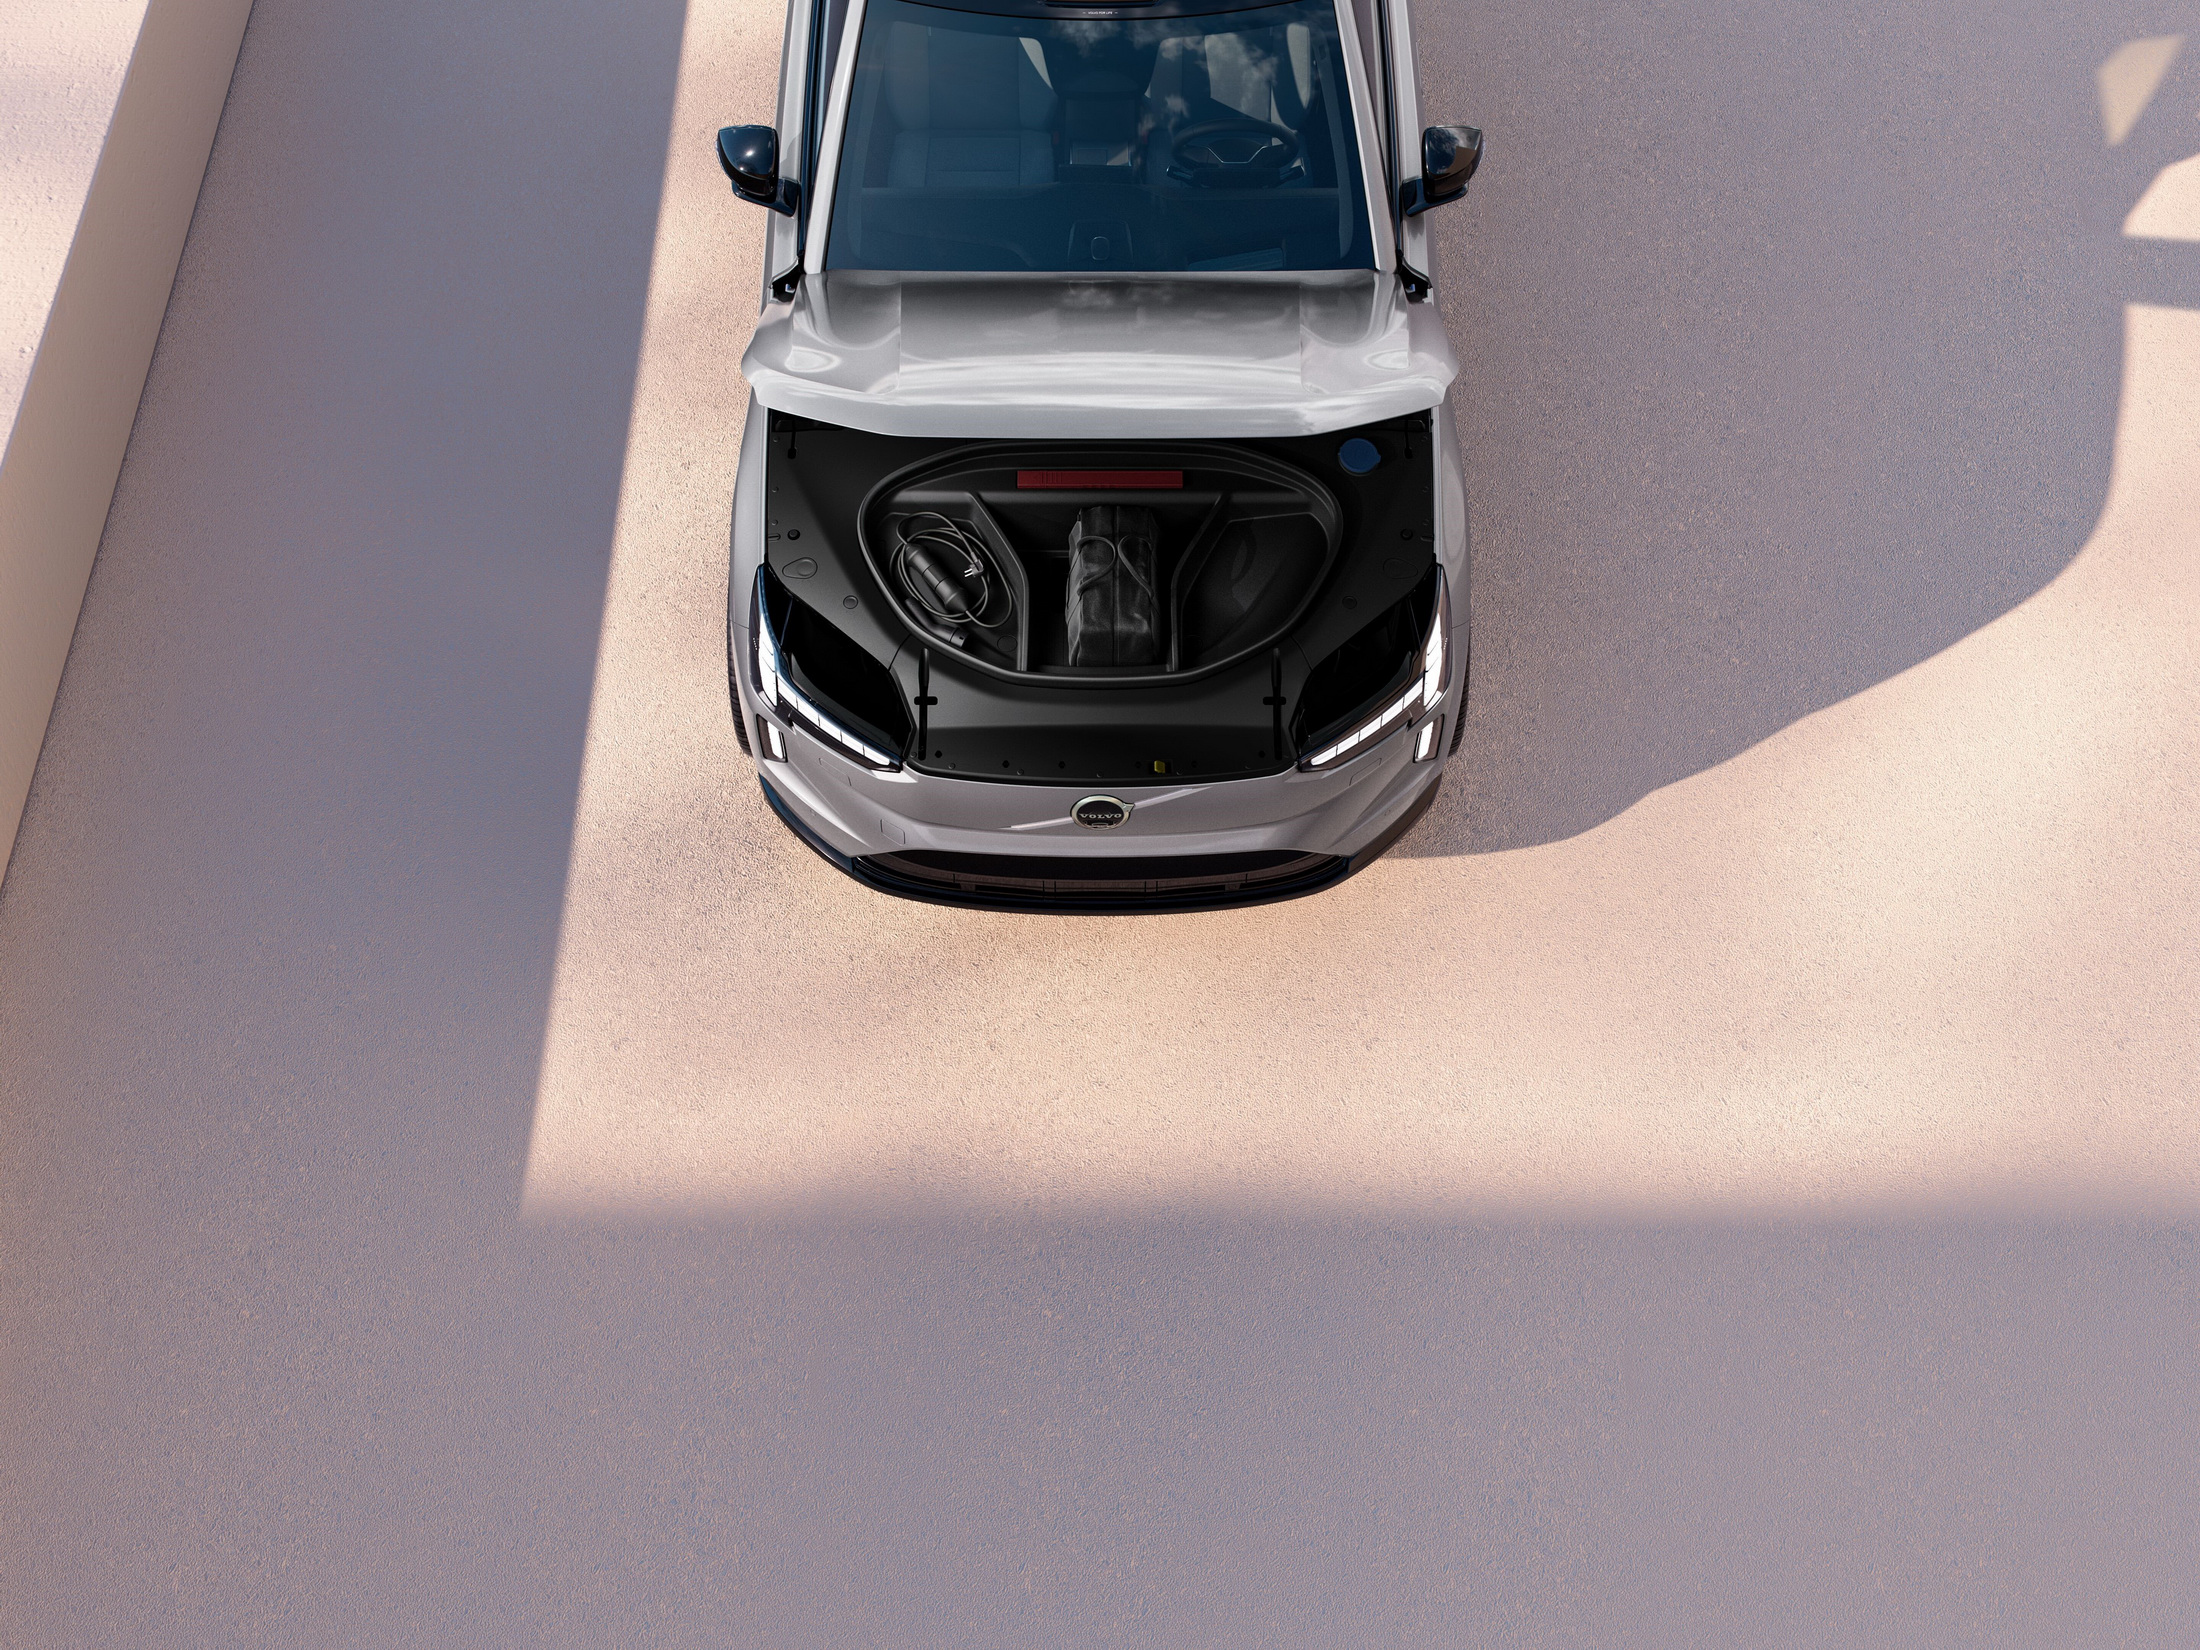 2024 Volvo EX90 resim galerisi (14.11.2022)